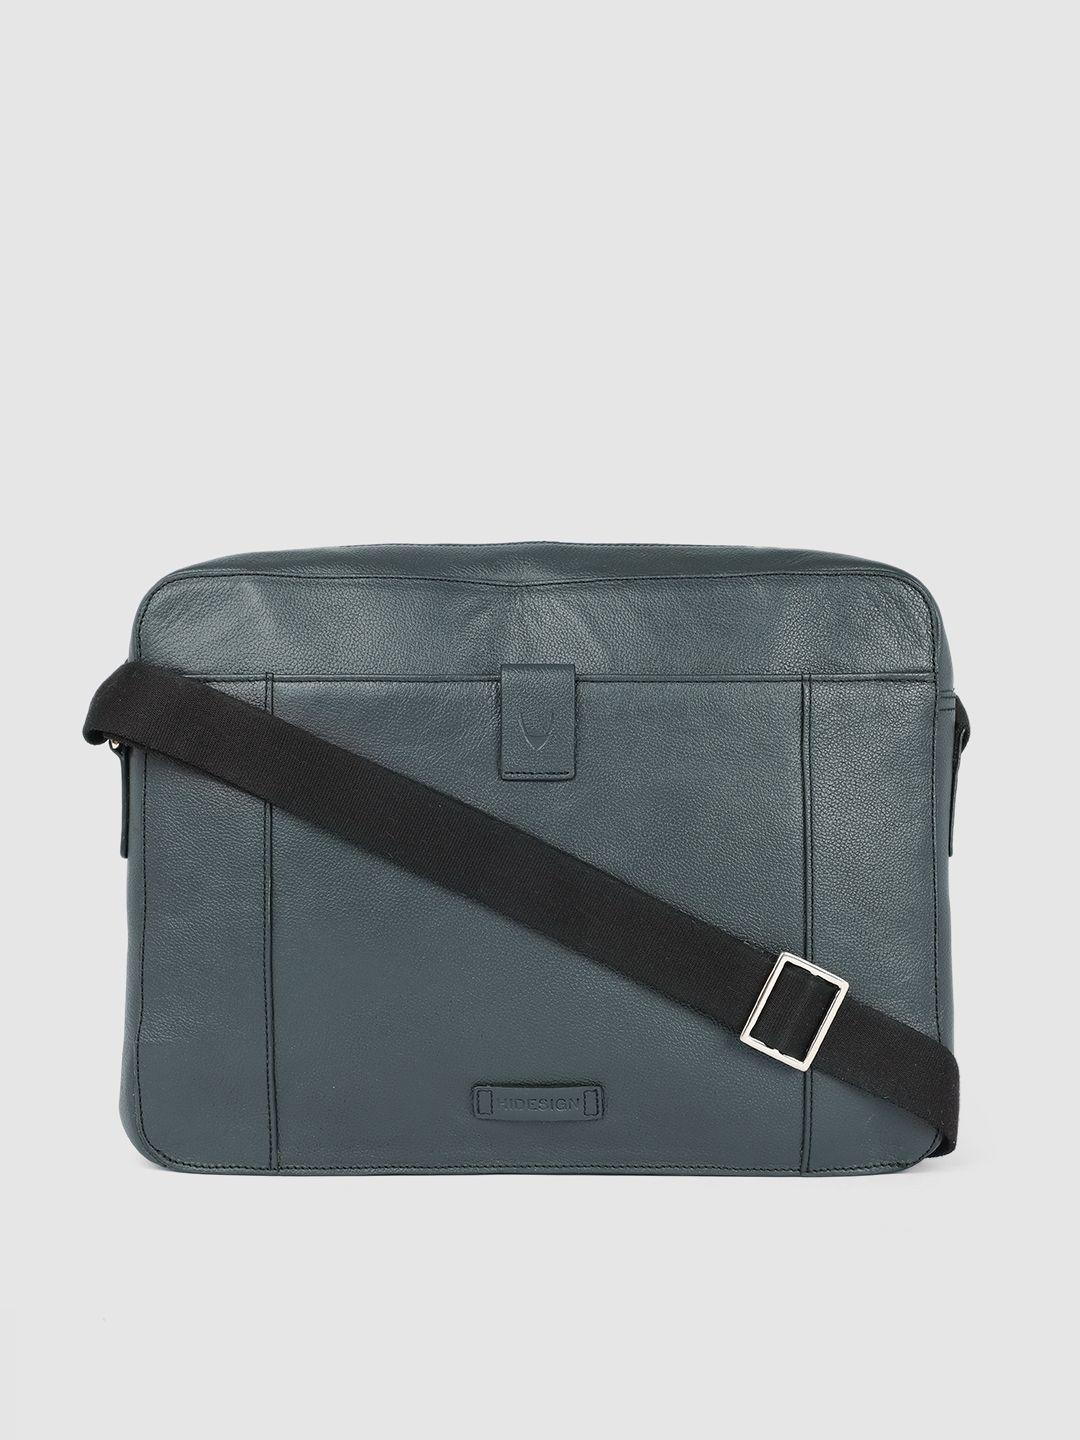 hidesign men blue solid leather laptop bag